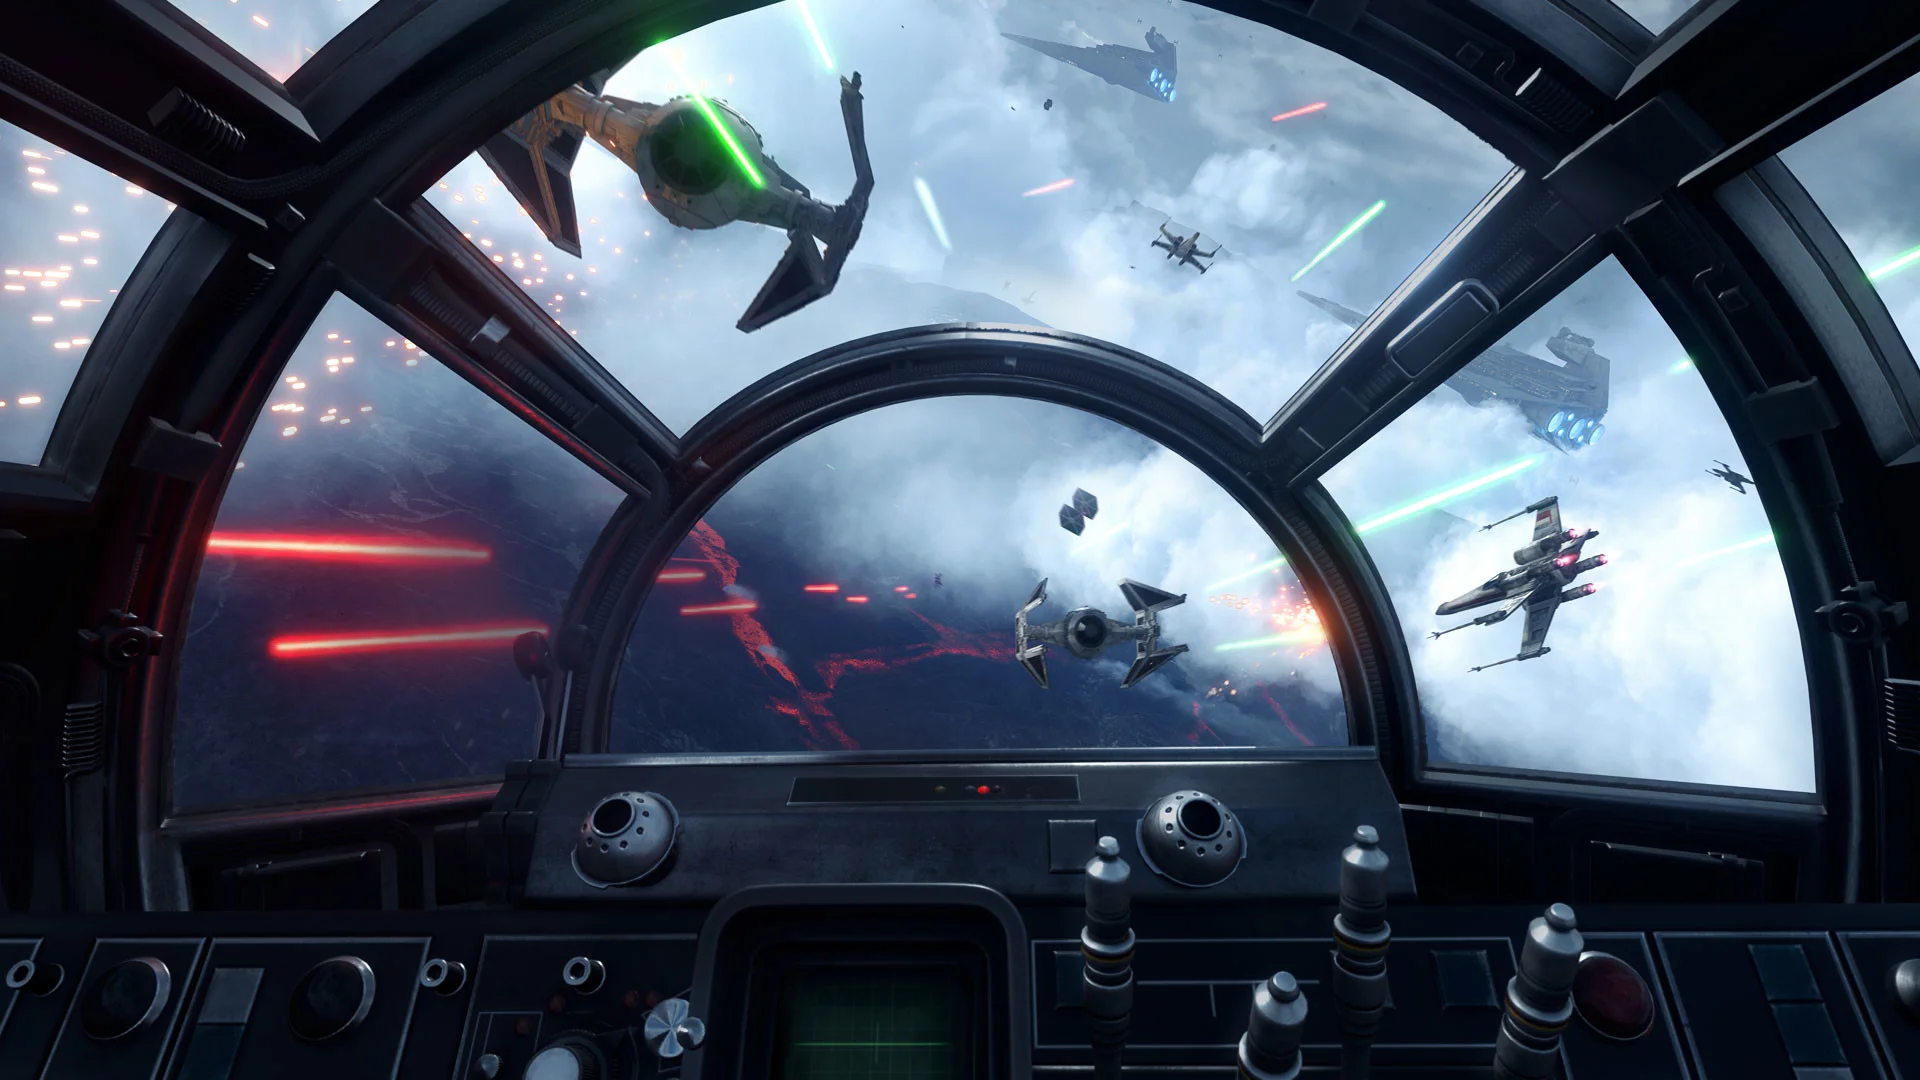 Star Wars Battlefront Millenium Falcon cockpit view